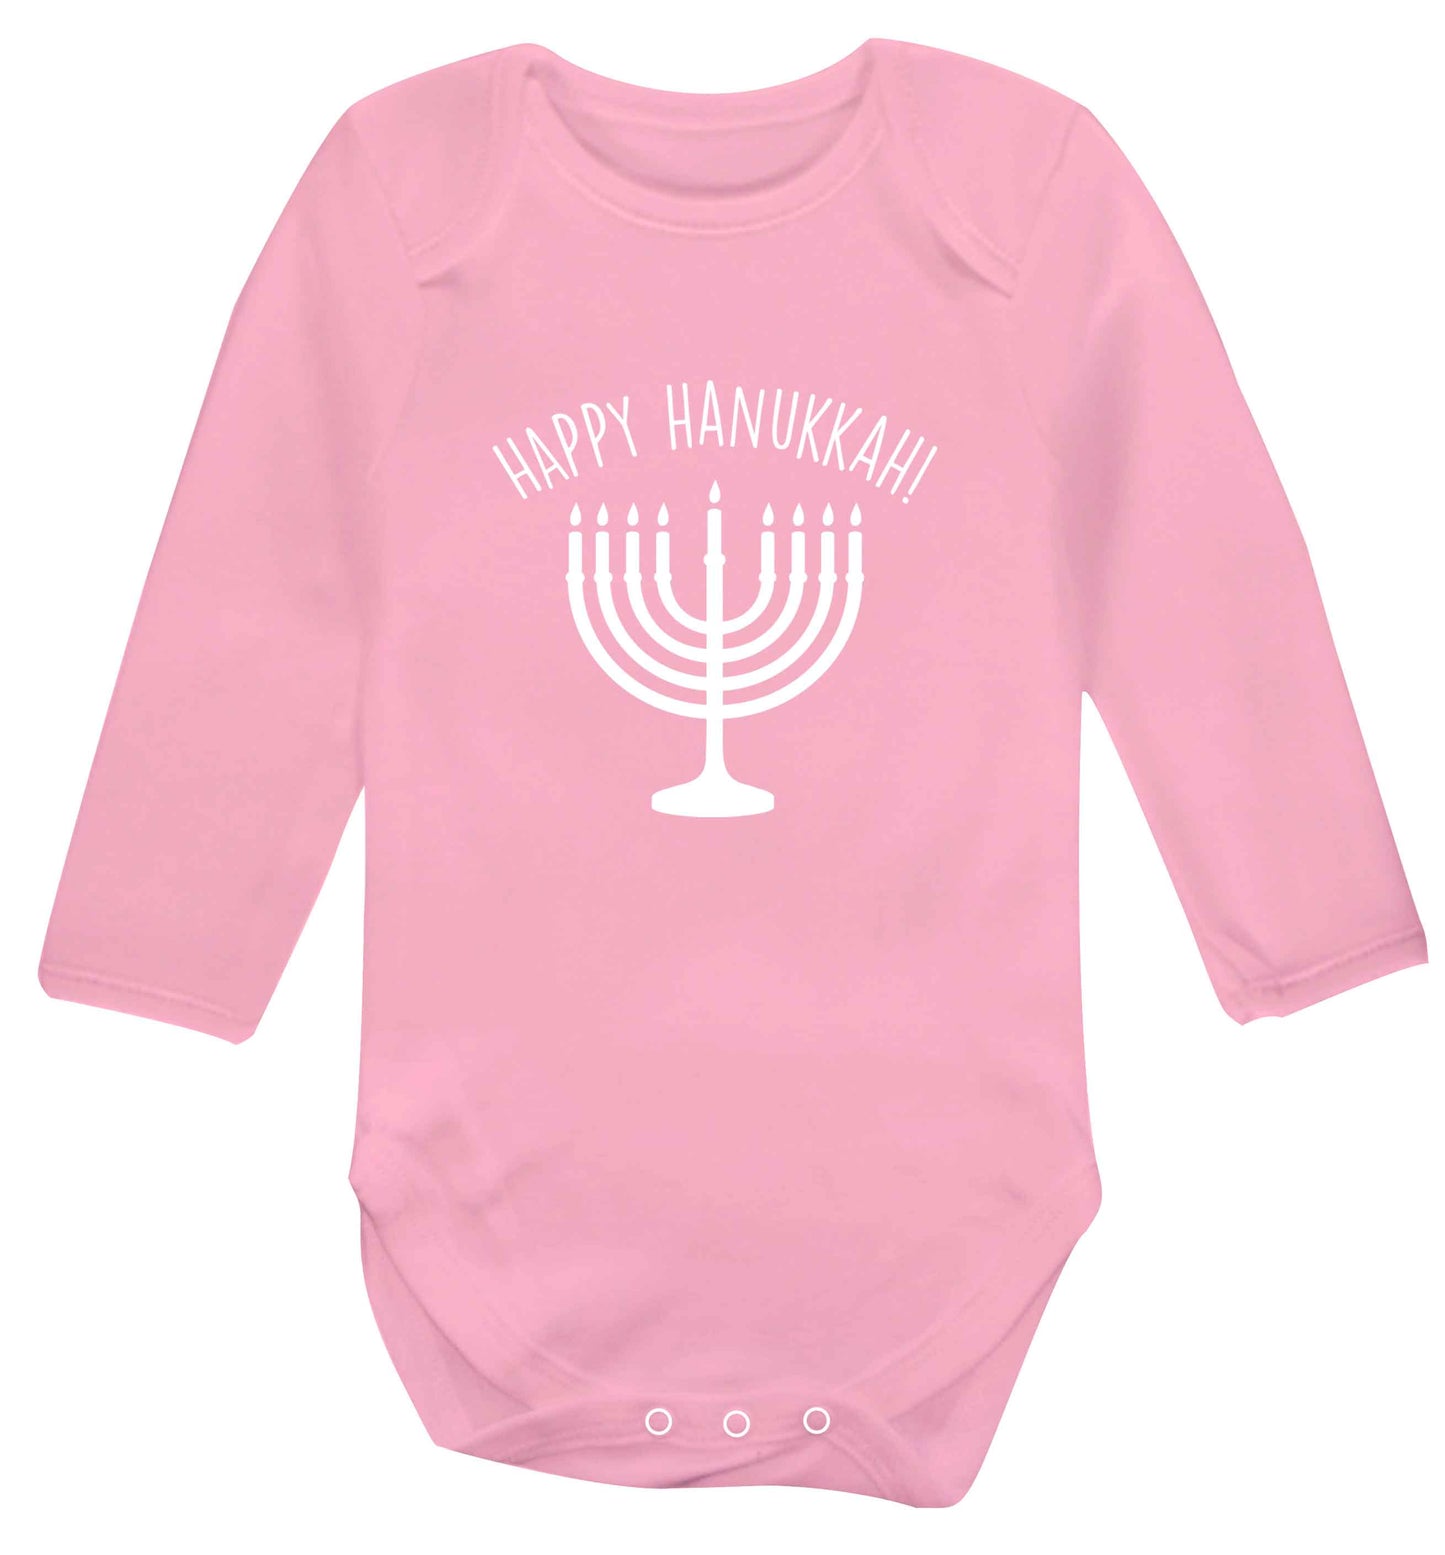 Happy hanukkah baby vest long sleeved pale pink 6-12 months